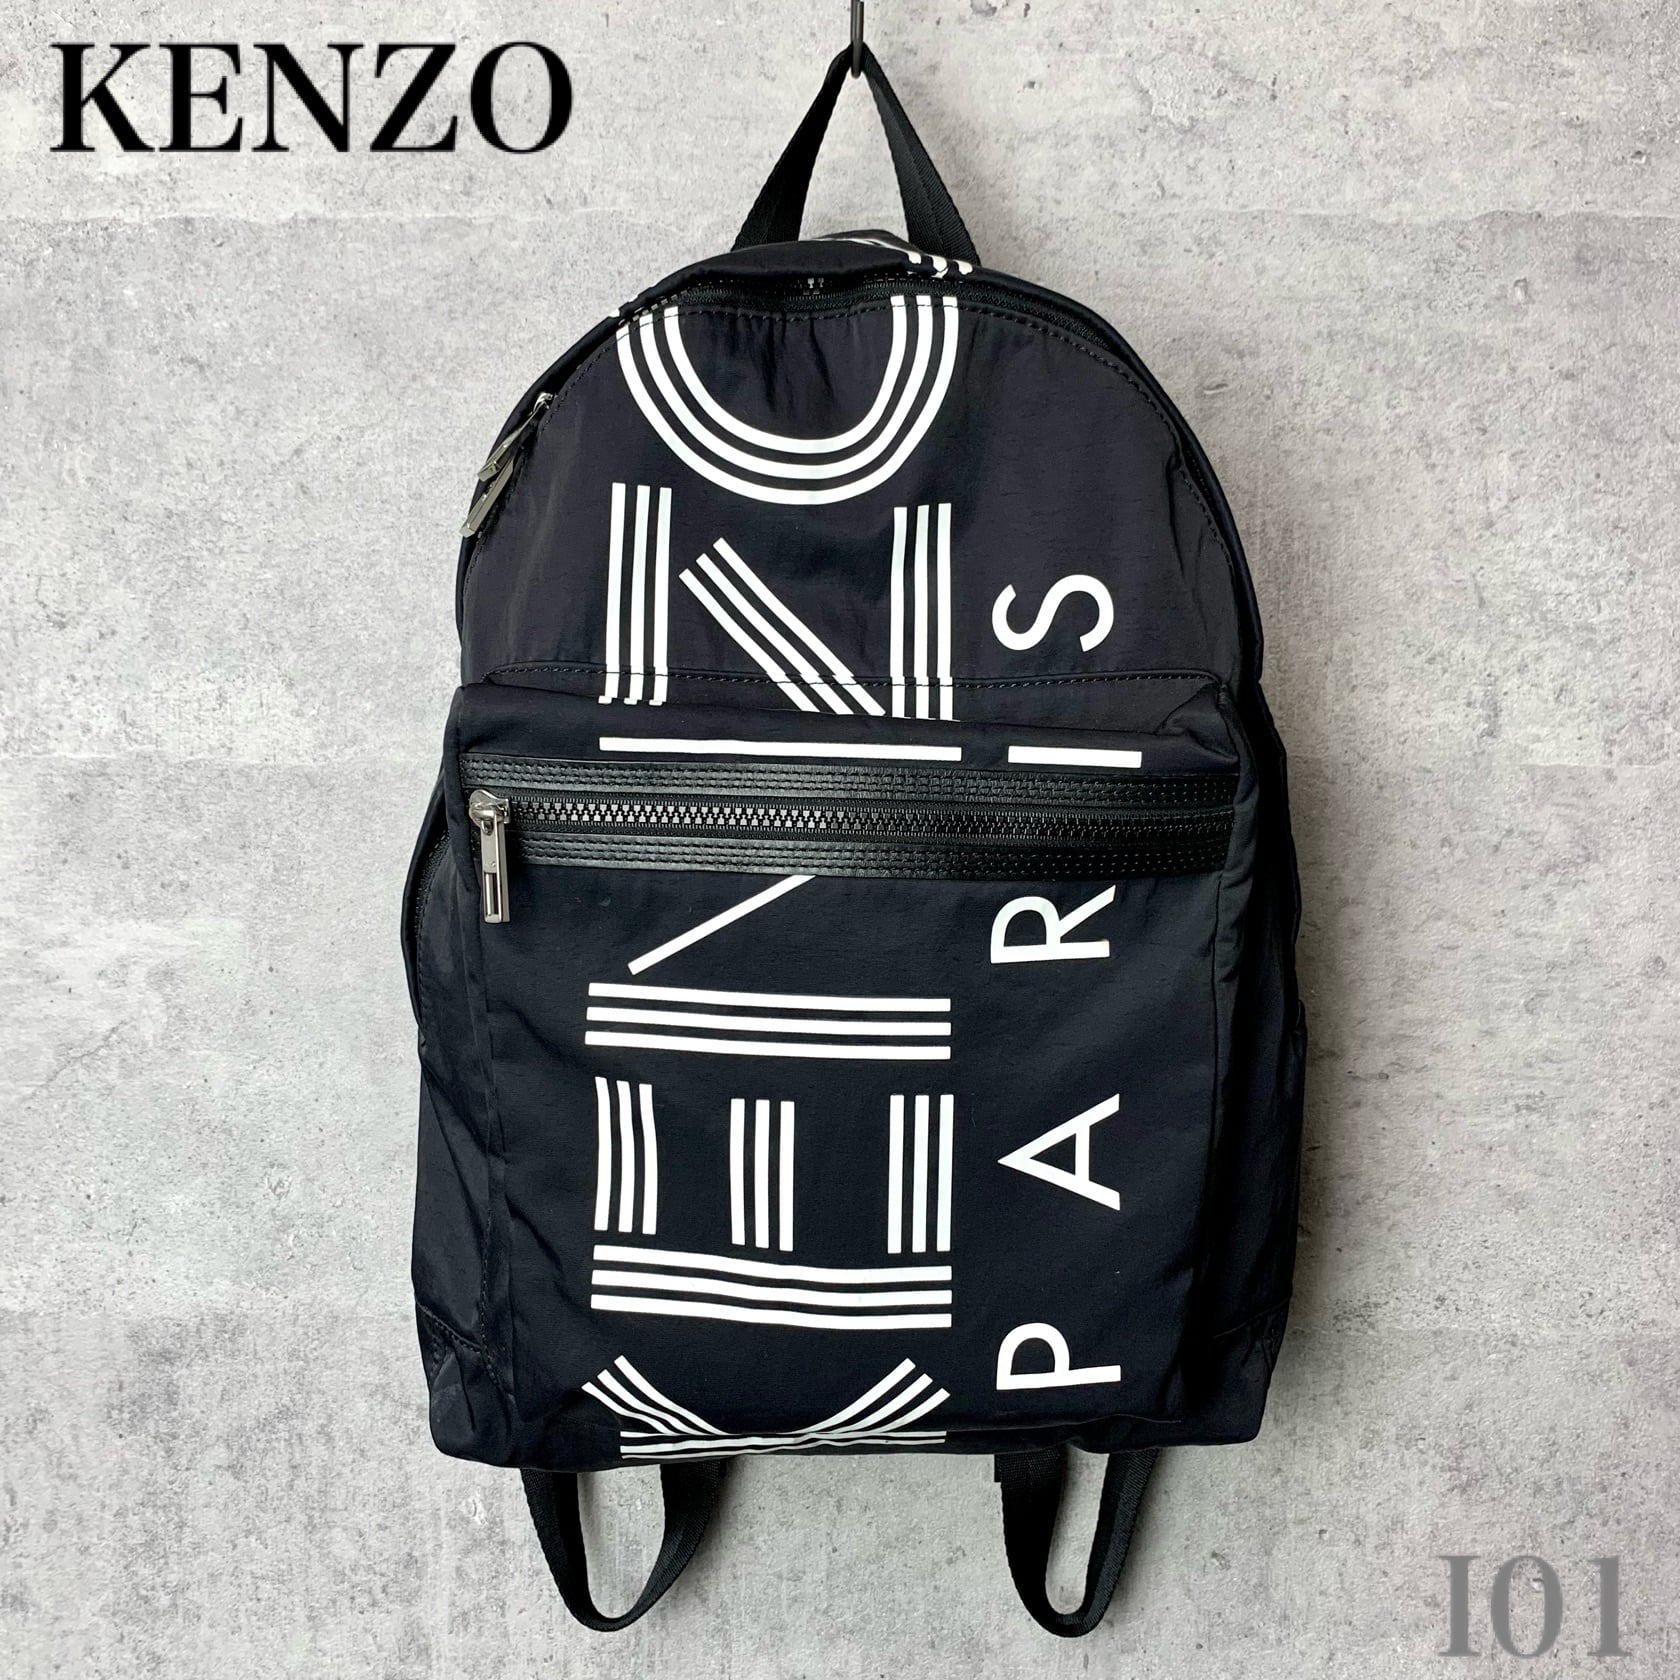 ケンゾー KENZO リュック バックパック ロゴ 鞄 黒 ▽ I01 【USED】 | etc